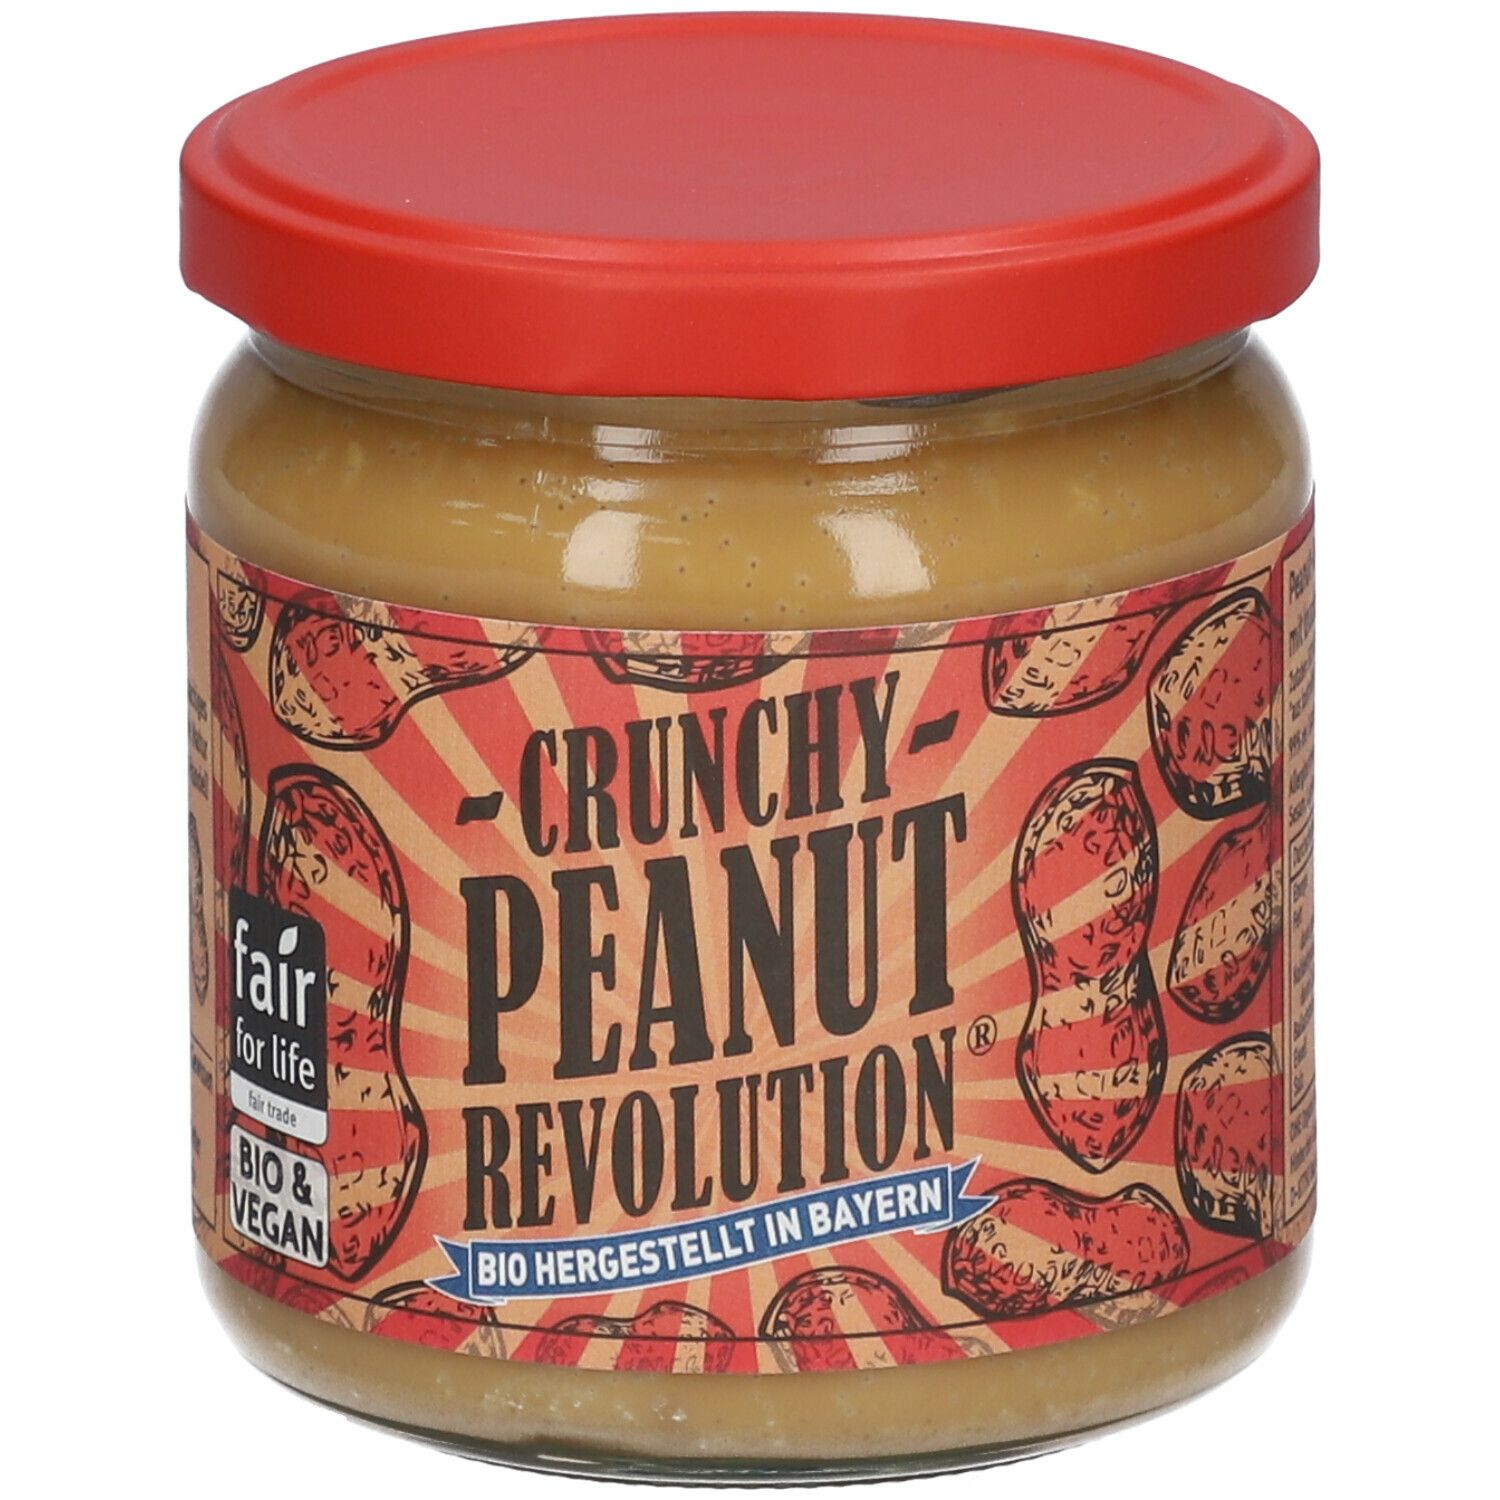 Crunchy Peanut Revolution®